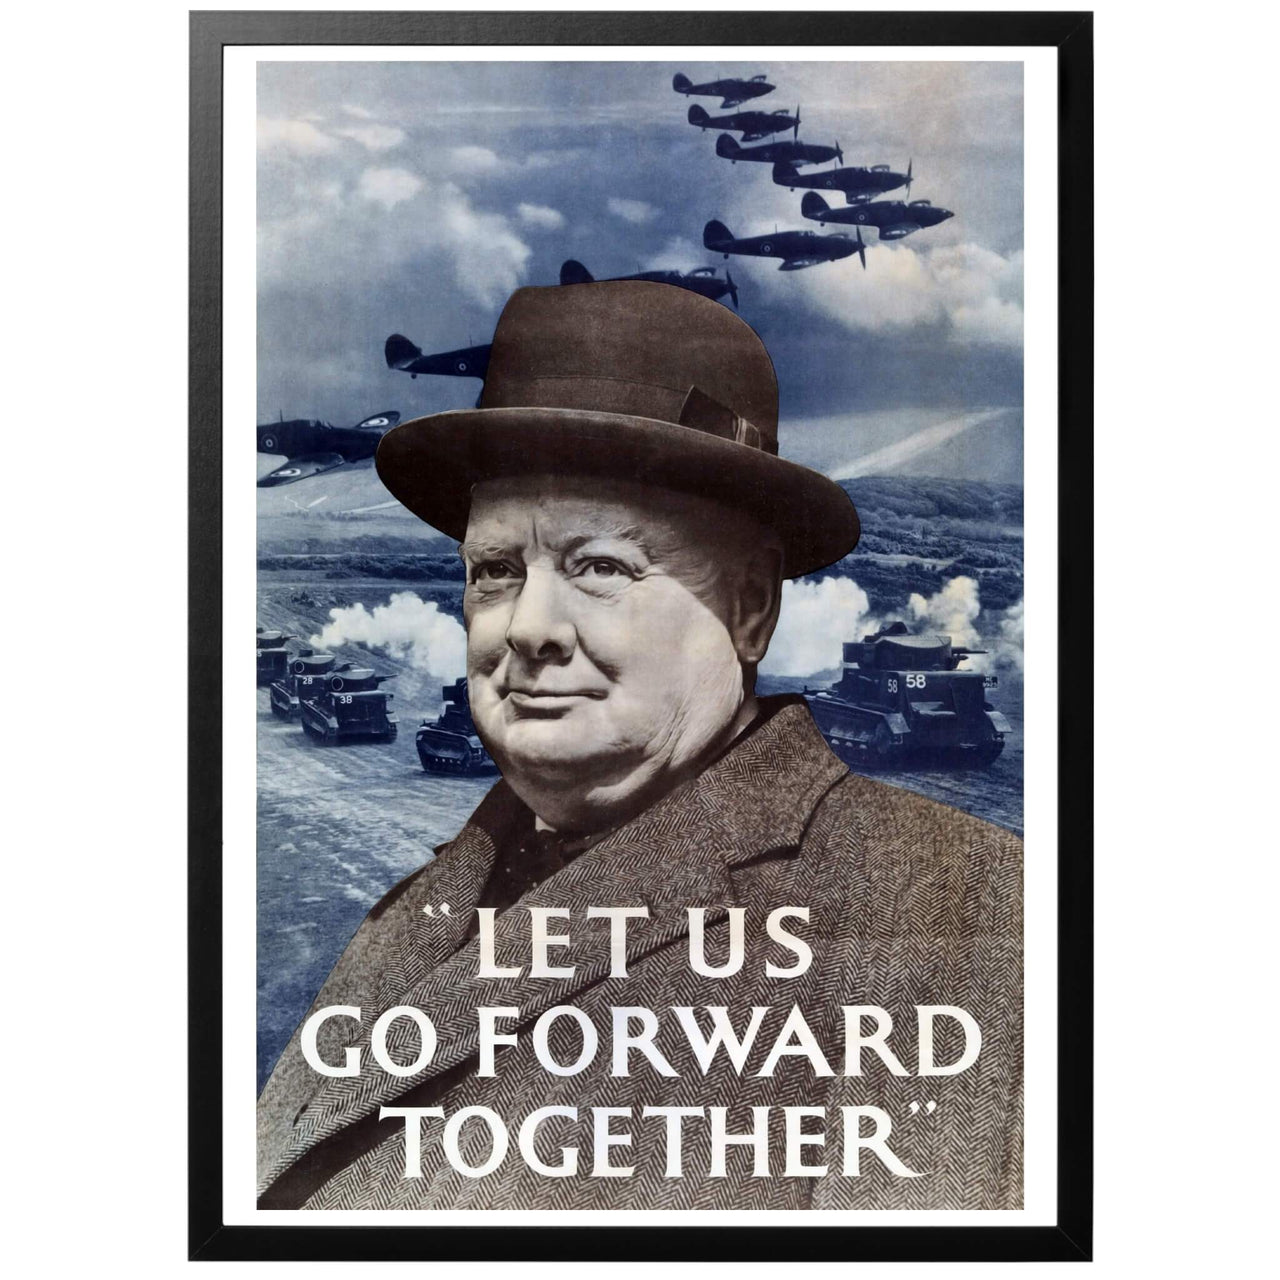 Let us go forward together  - "Låt oss gå fram tillsammans Brittisk WWII affisch. En av de mest kända och klassiska motiven av Brittisk propaganda. "Landsfadern" Sir Winston Churchill, som betydde så mycket för den brittiska kampviljan och motståndskraften, poserar här tillsammans med RAF och framryckande pansar. 